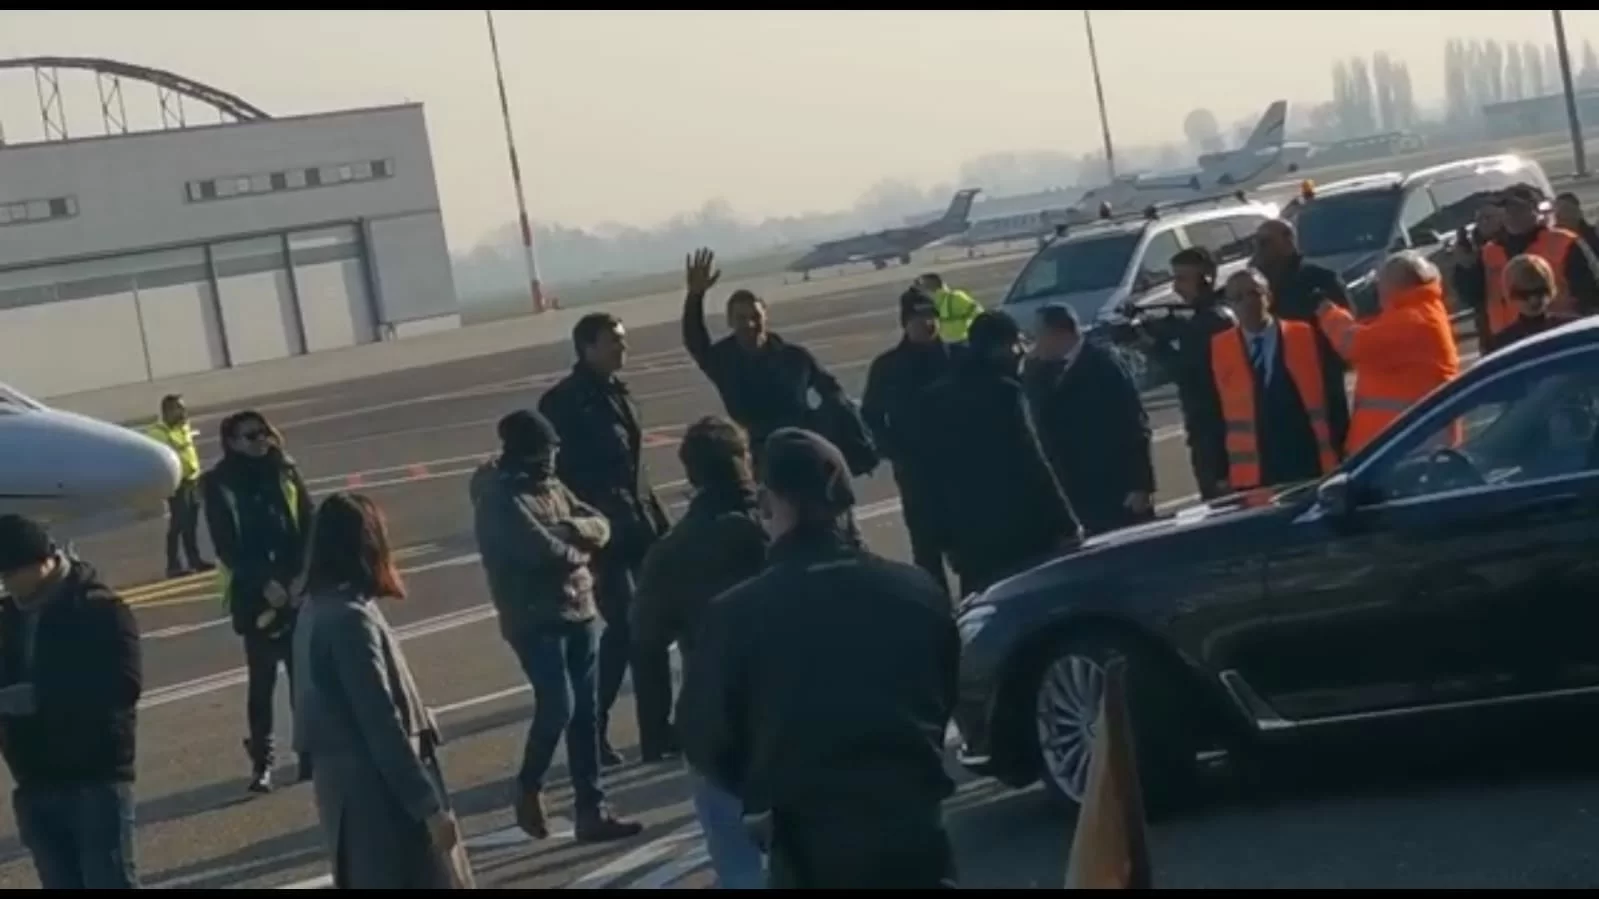 SM VIDEO – Le immagini dell’arrivo di Zlatan Ibrahimovic a Linate